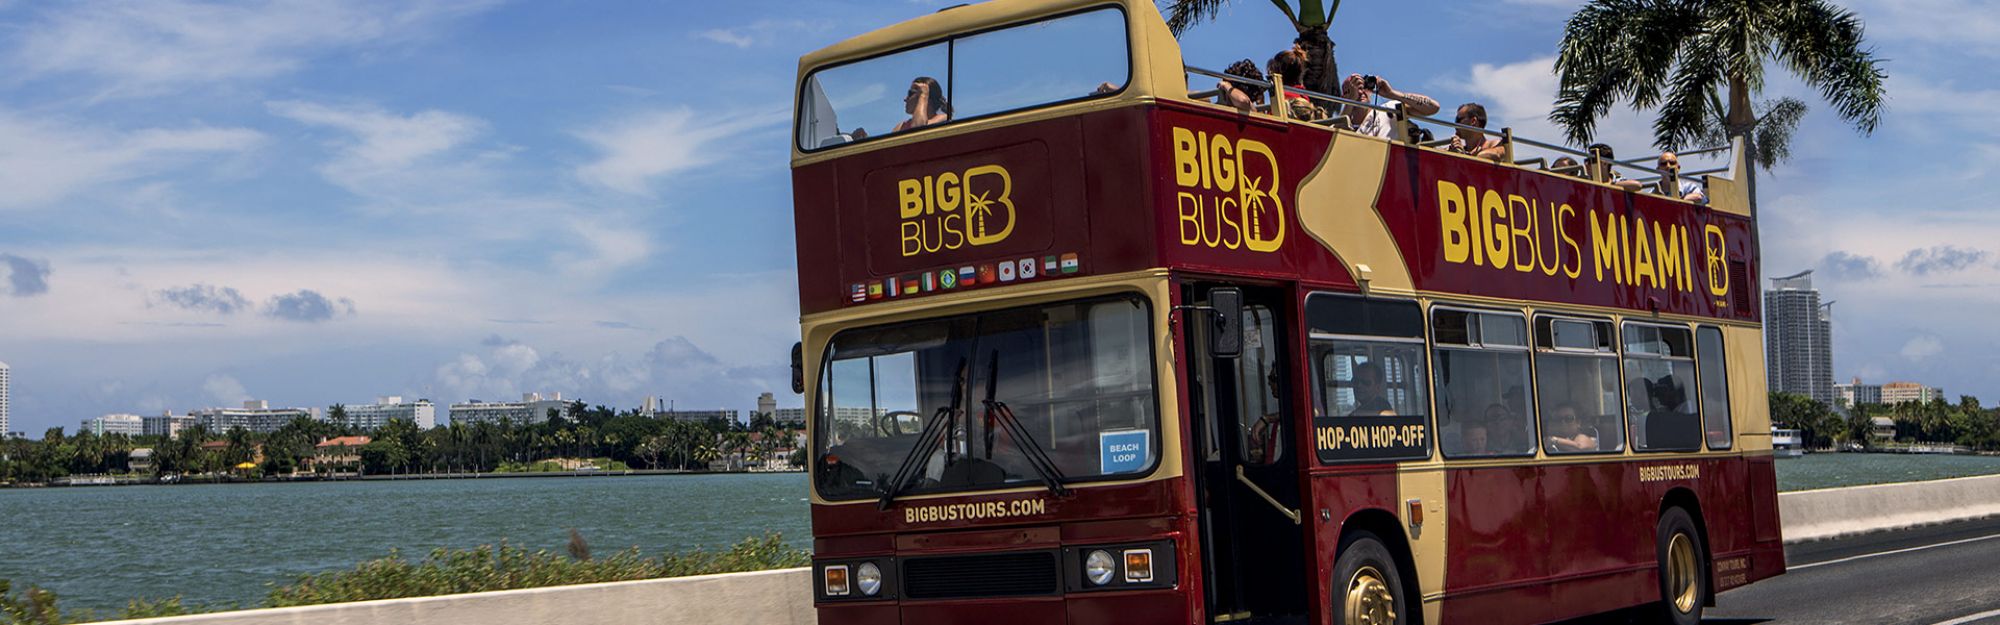 classic 1-day miami tour ticket | big bus tours